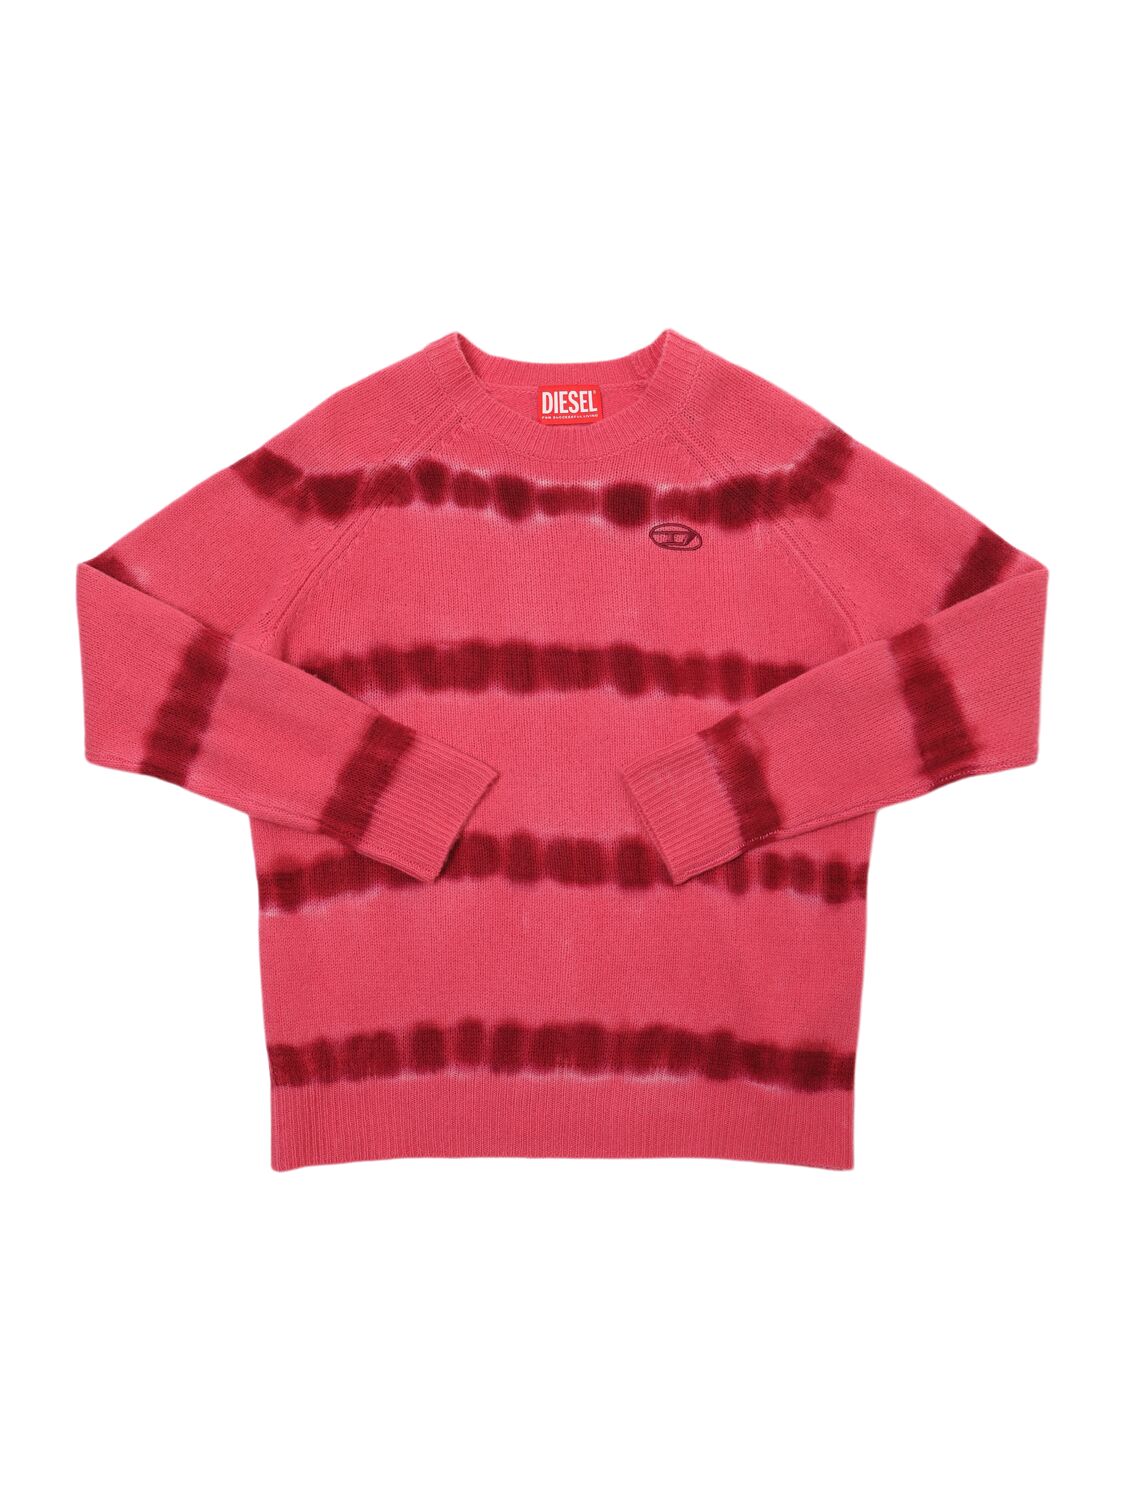 Diesel Kids' Wool Knit Sweater In Fuchsia